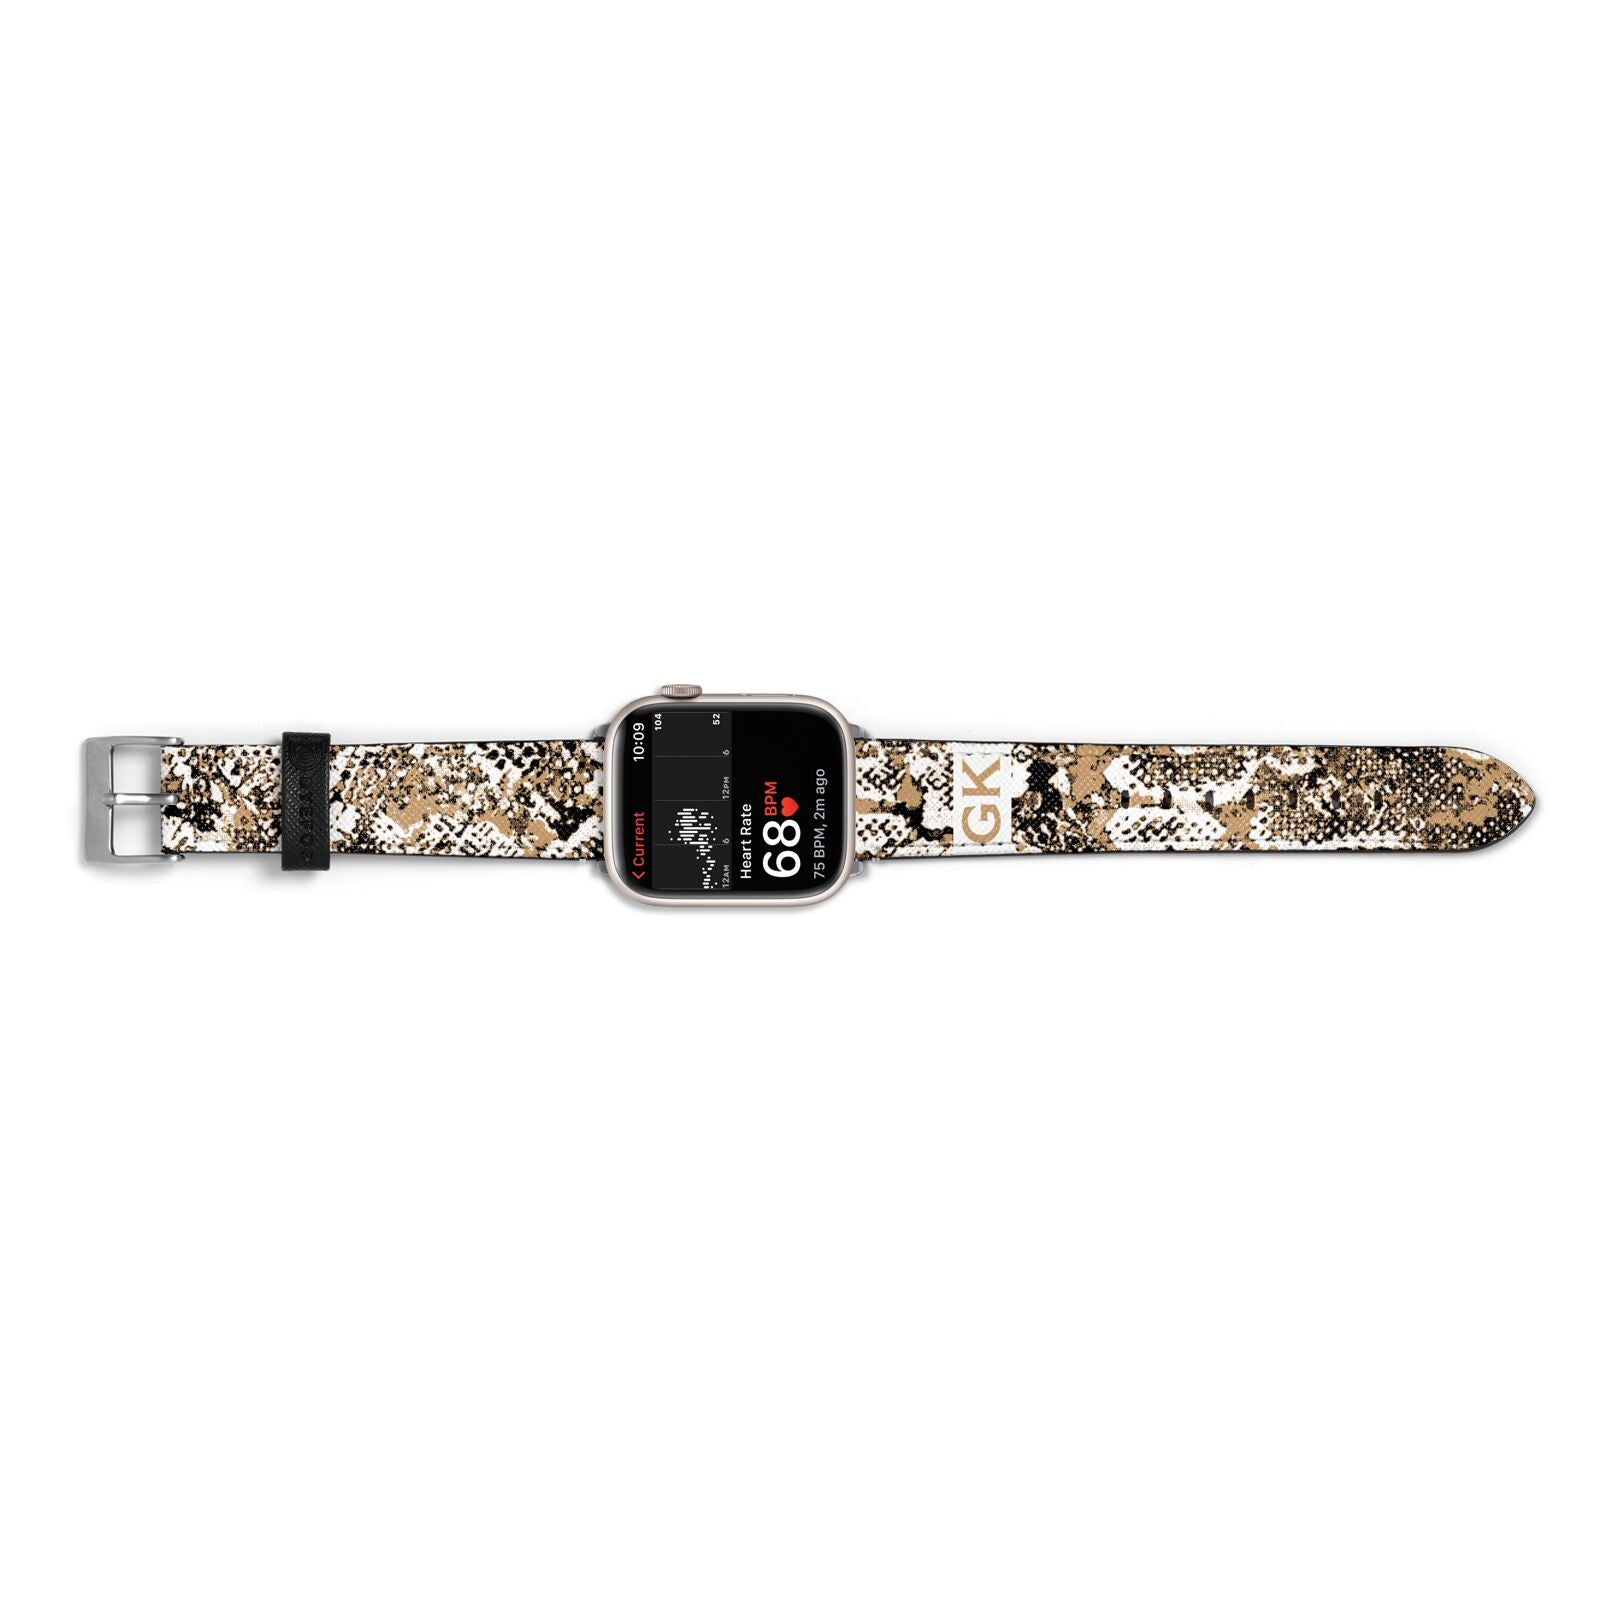 Custom Tan Snakeskin Apple Watch Strap Size 38mm Landscape Image Silver Hardware